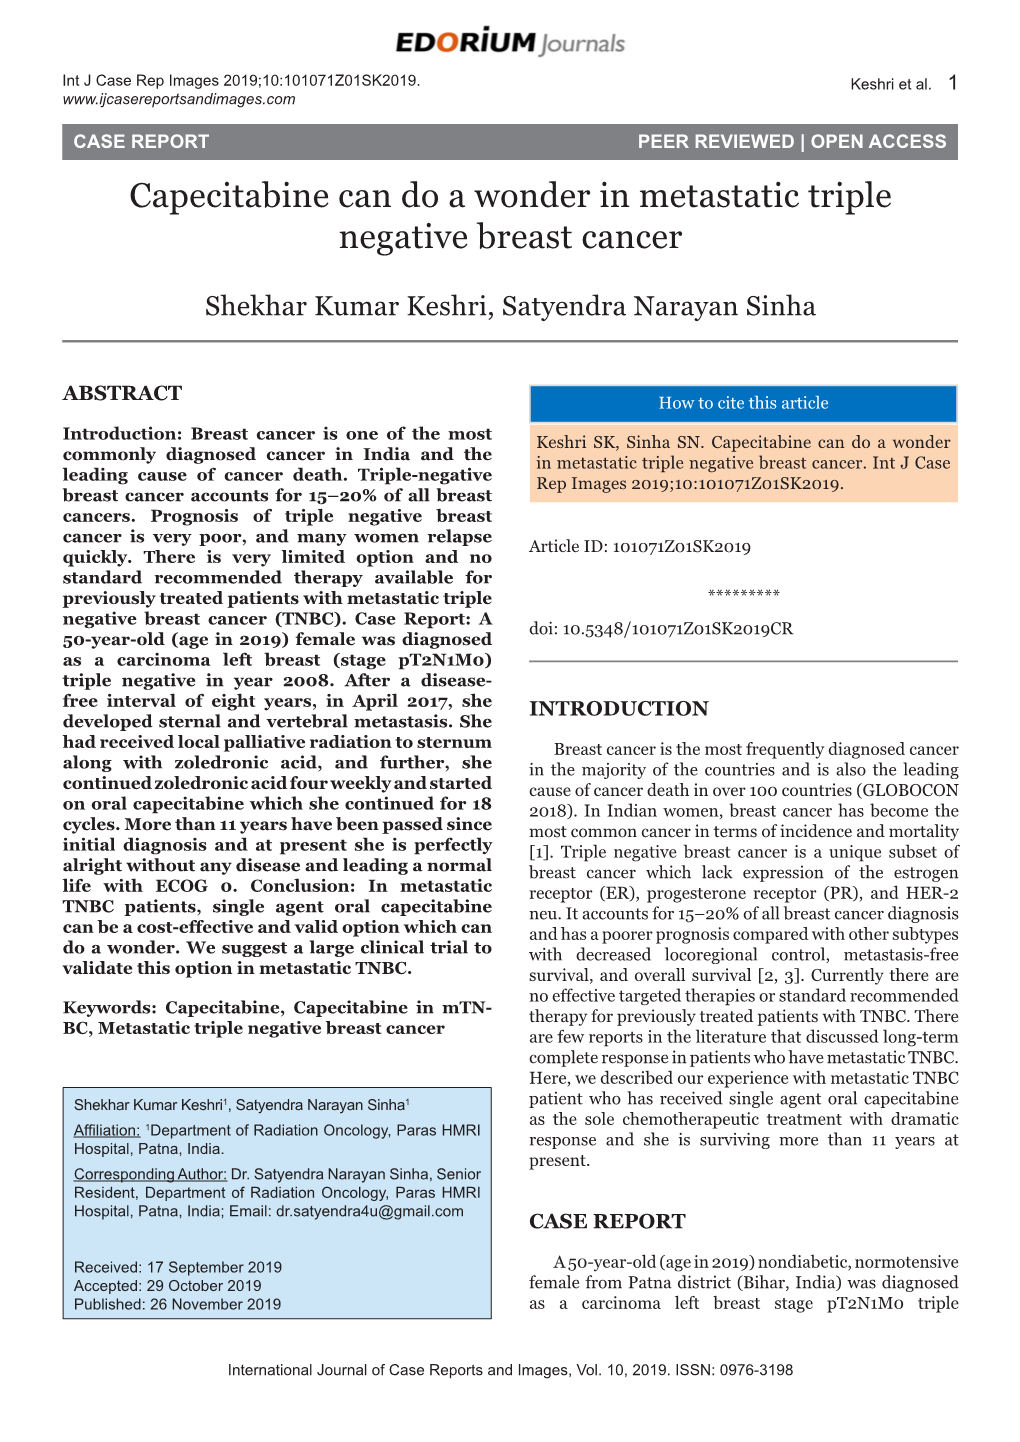 Capecitabine Can Do a Wonder in Metastatic Triple Negative Breast Cancer